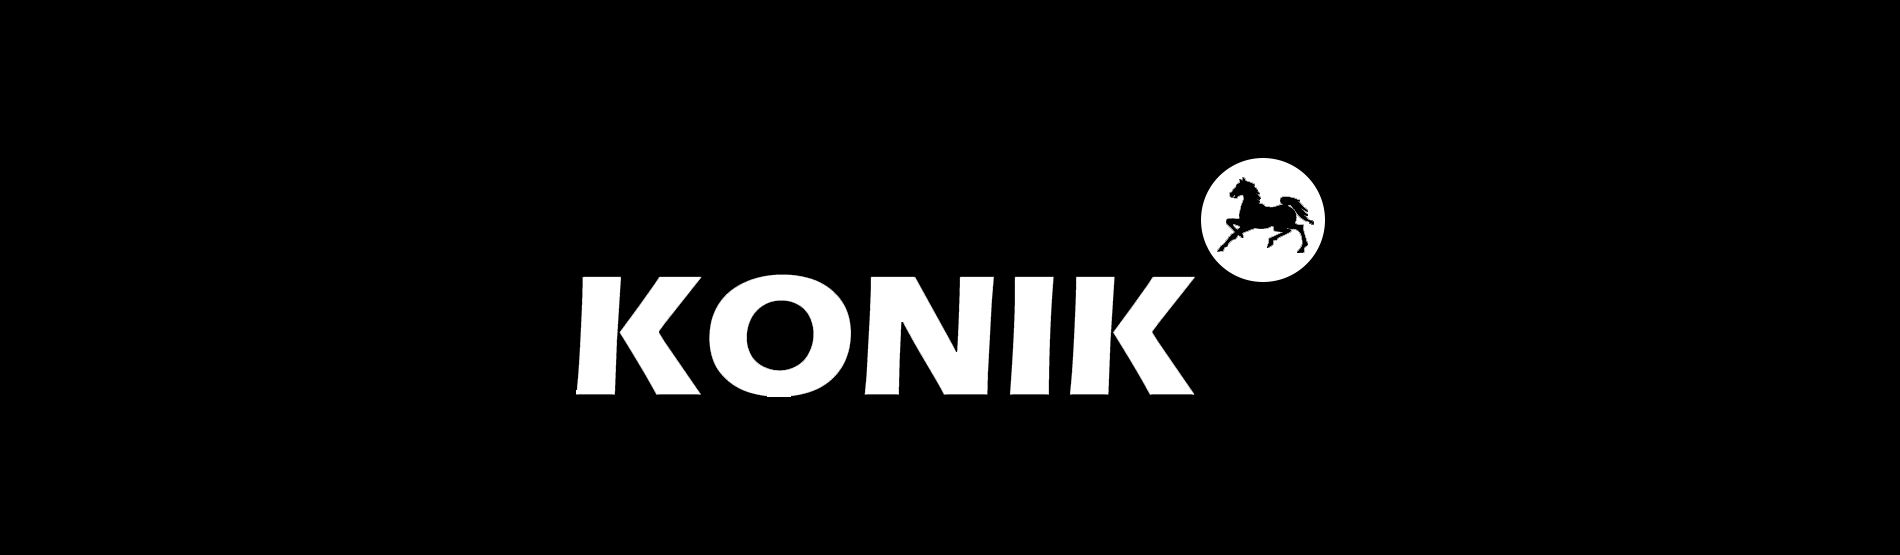 konik-1